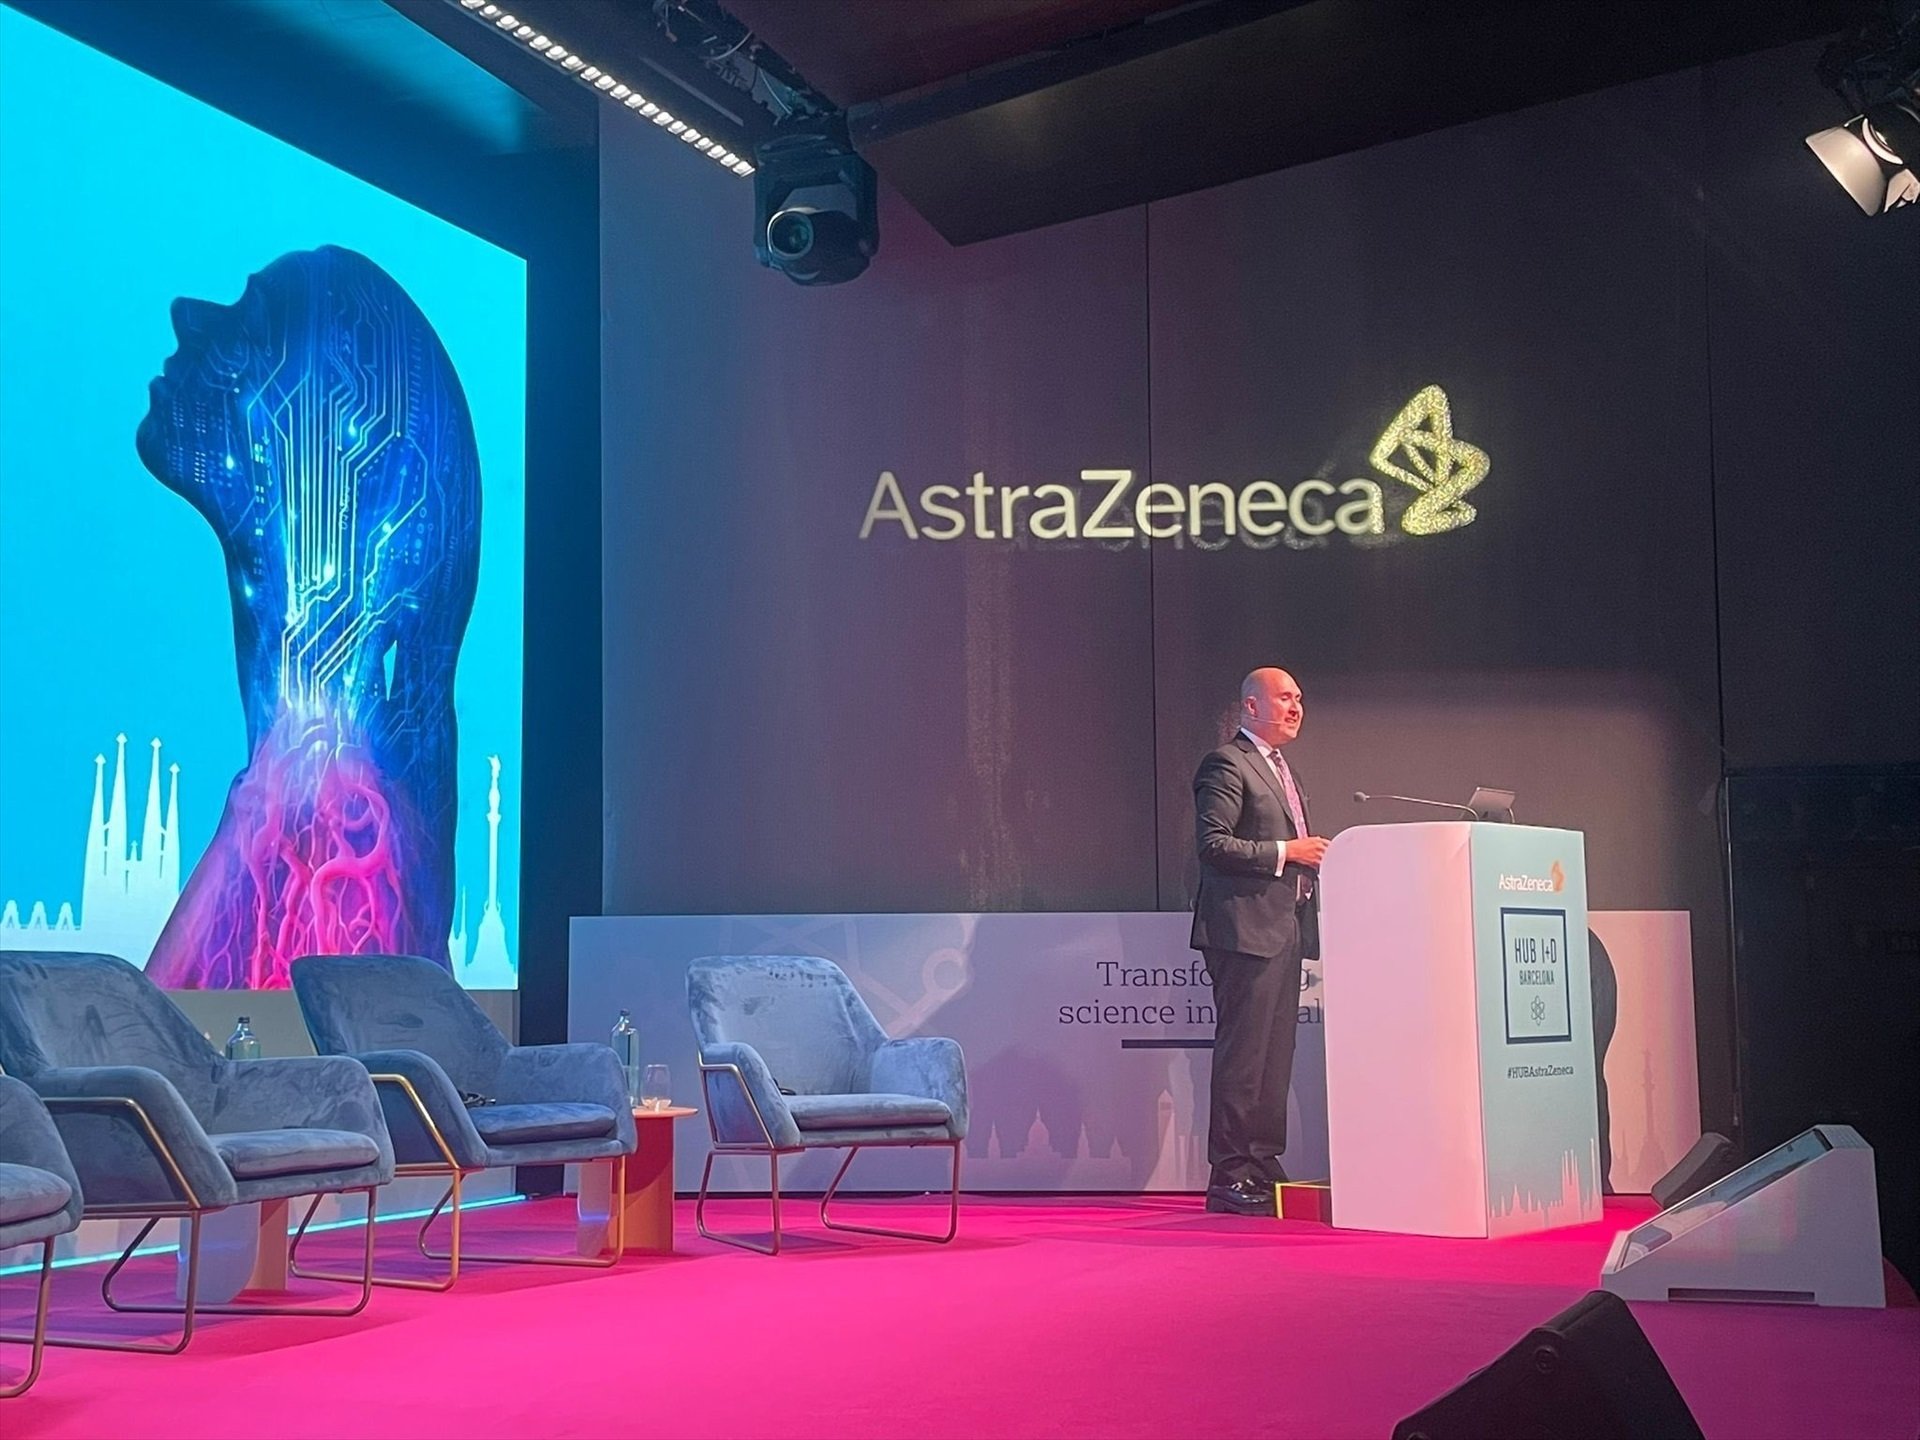 AstraZeneca invertirá 800 millones en un 'hub' de innovación en salud en Barcelona